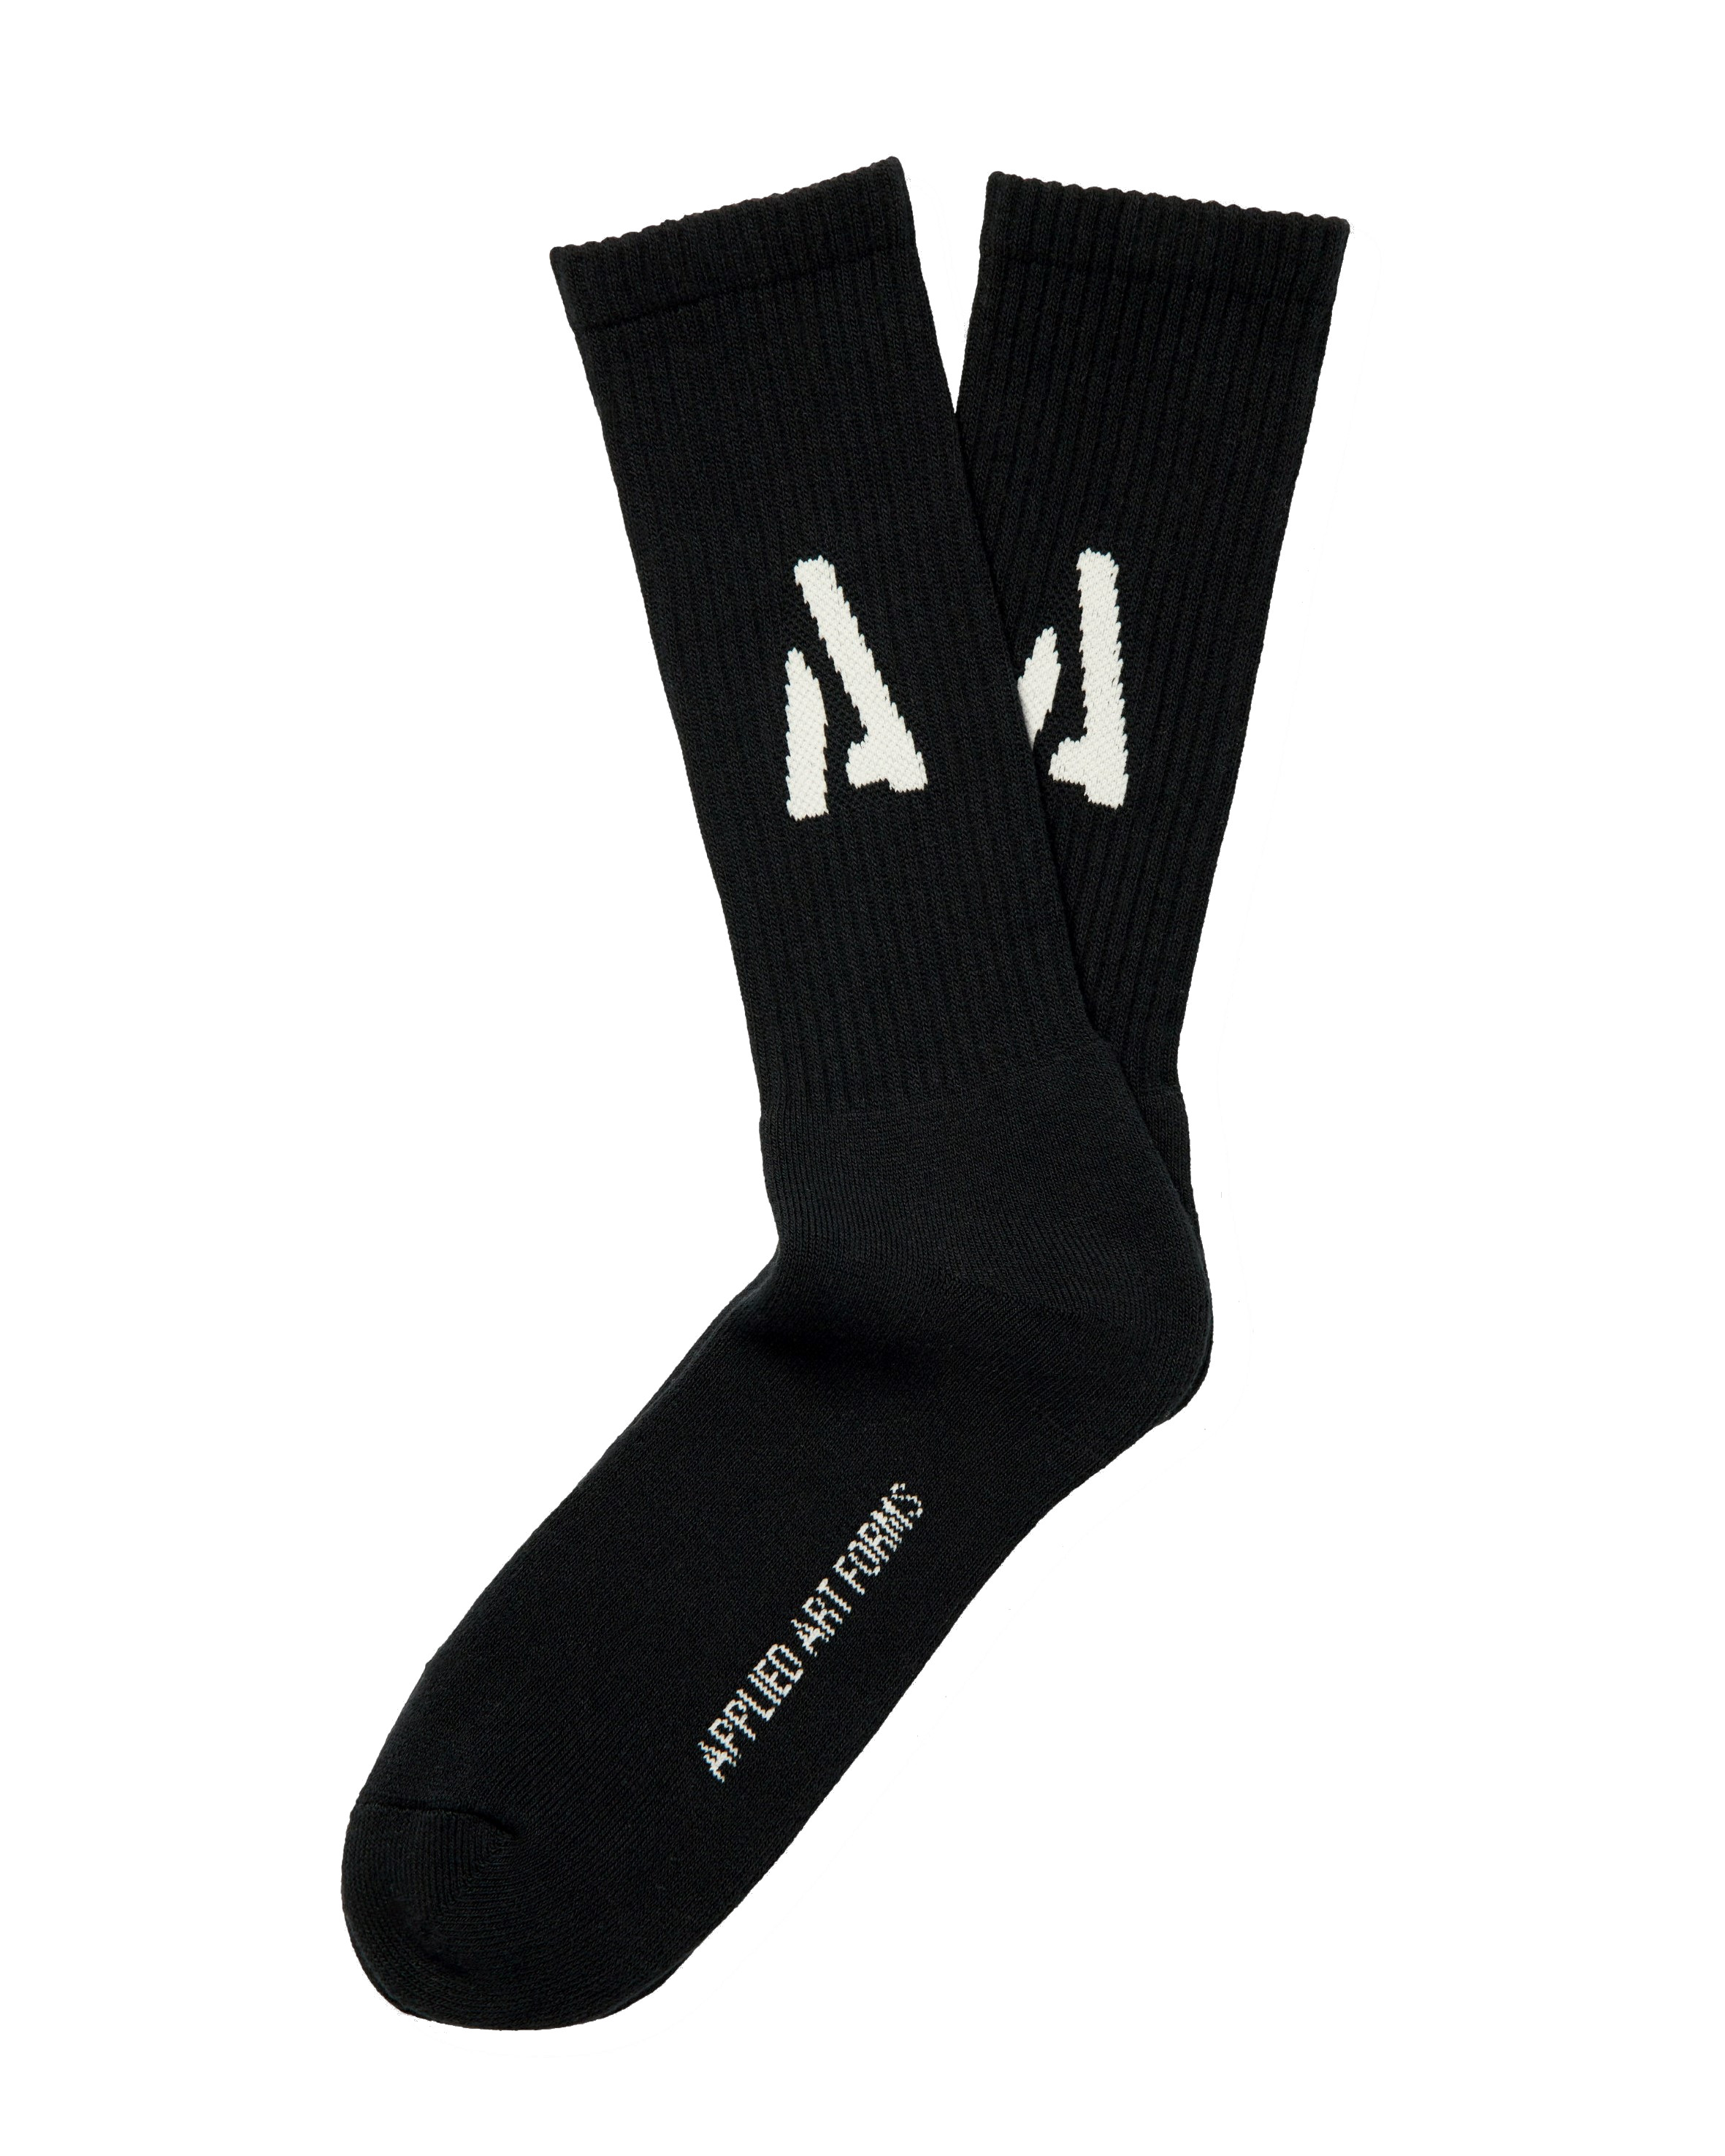 APPLIED ART FORMS Heavyweight Socks in Black